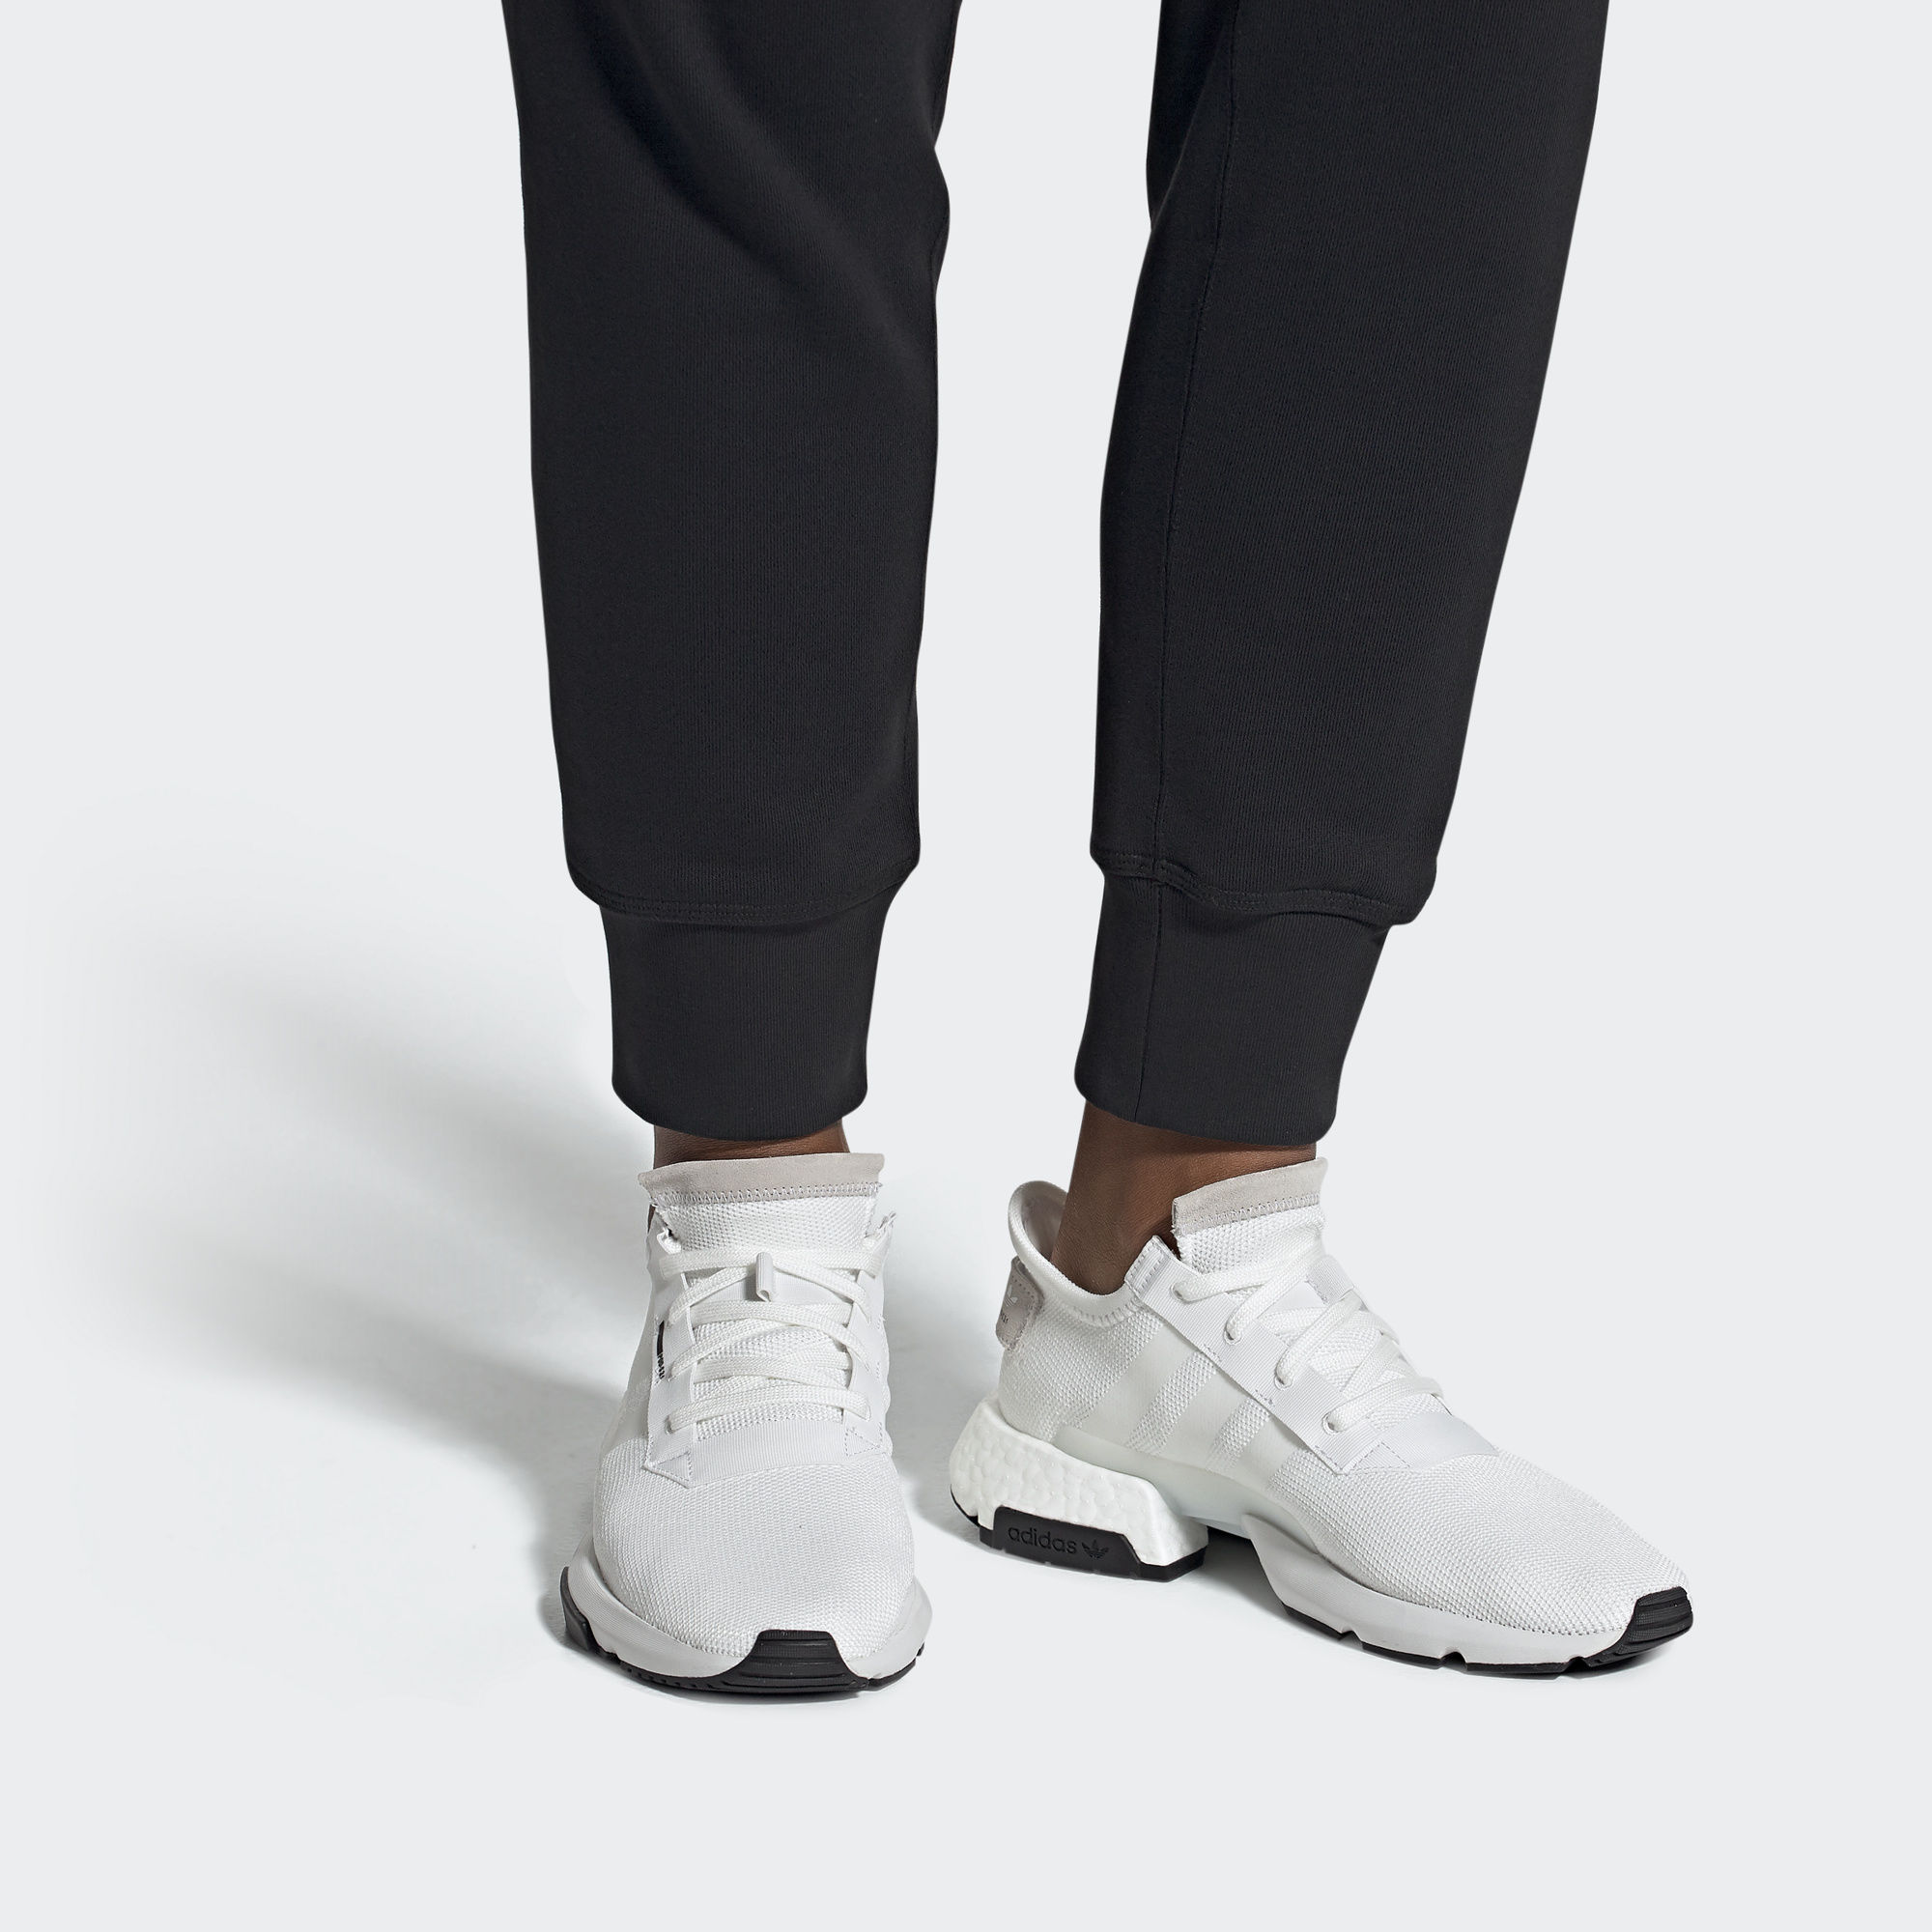 adidas pod white on feet